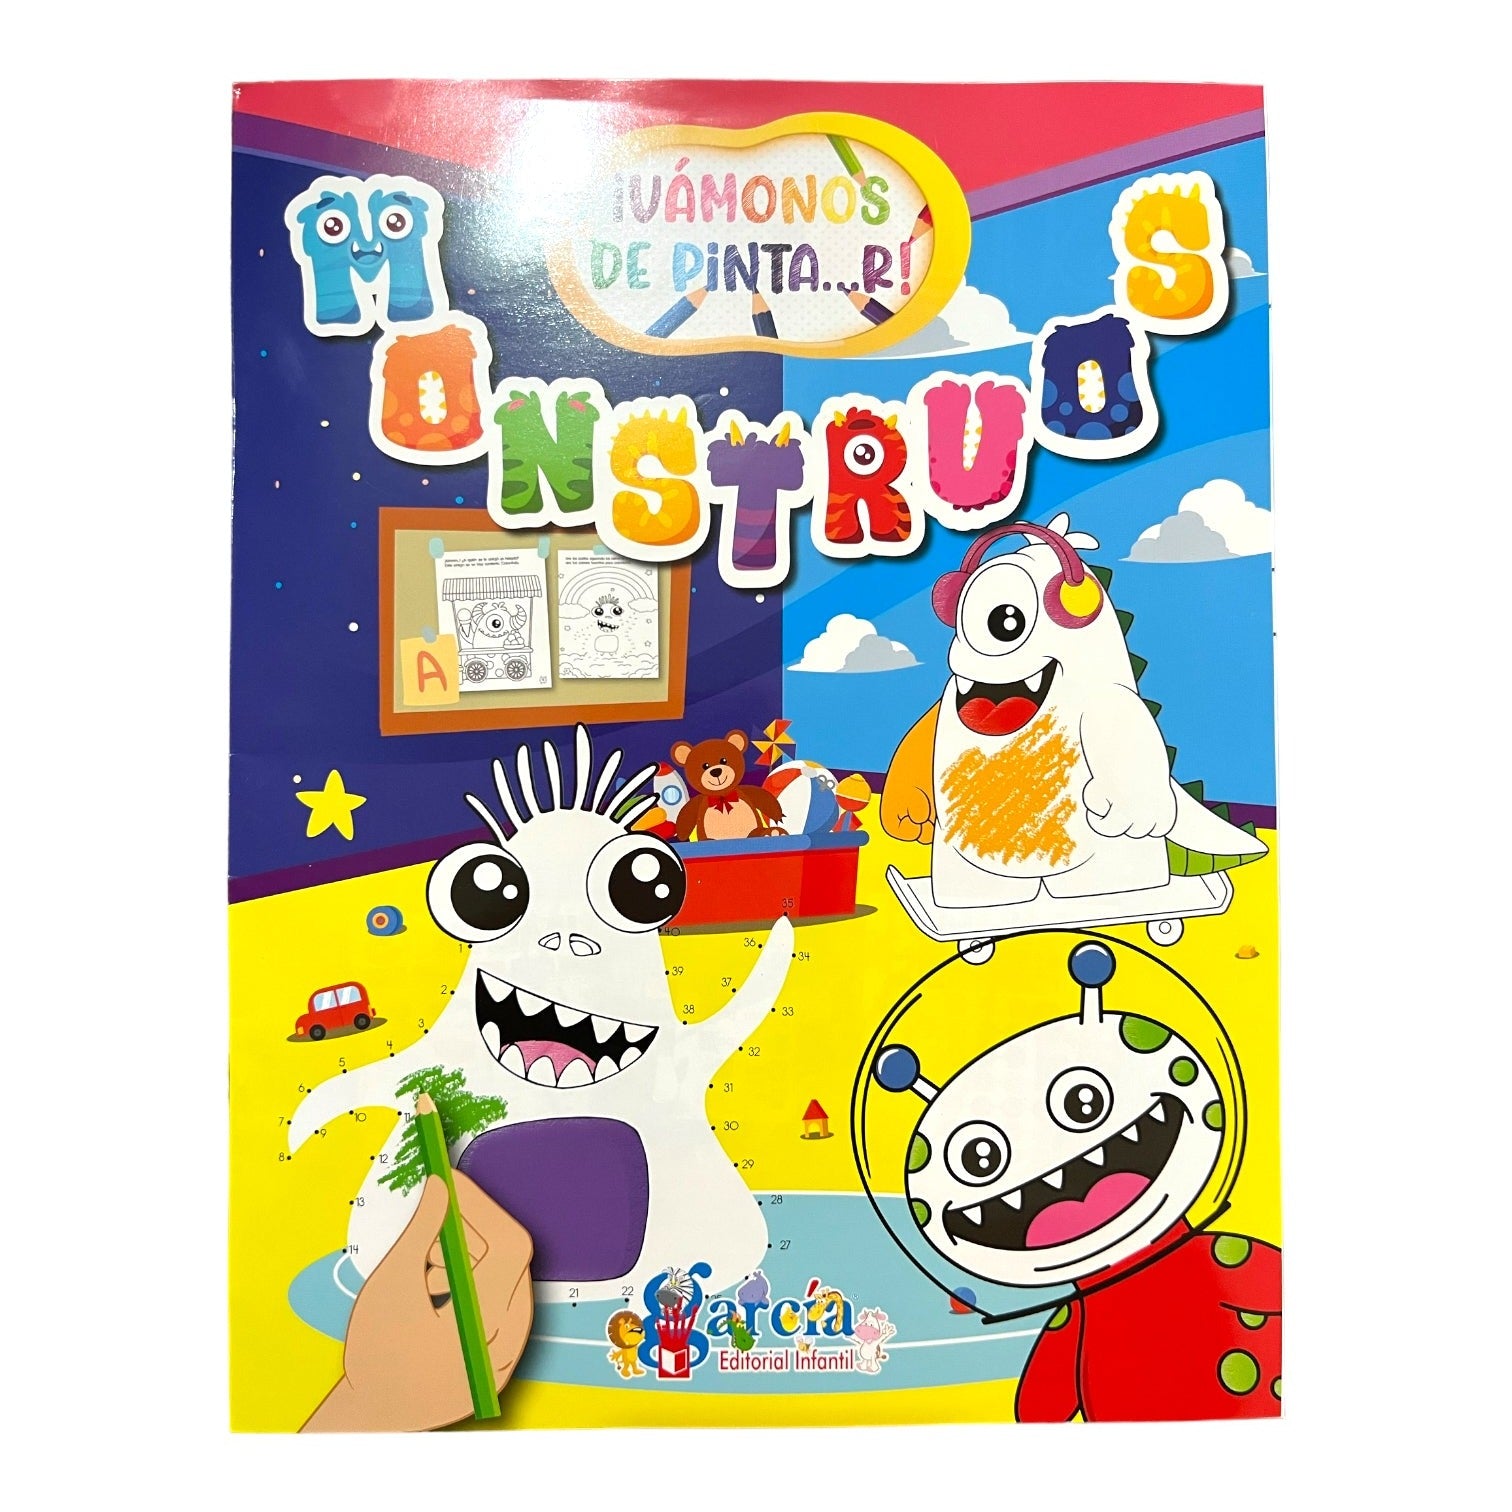 Unicornio Libro de Colorear para Niños : 50 Increíbles Imágenes Para  Colorear Unicornios - Para Niñas y Niños de 4 a 8 Años (Paperback) 